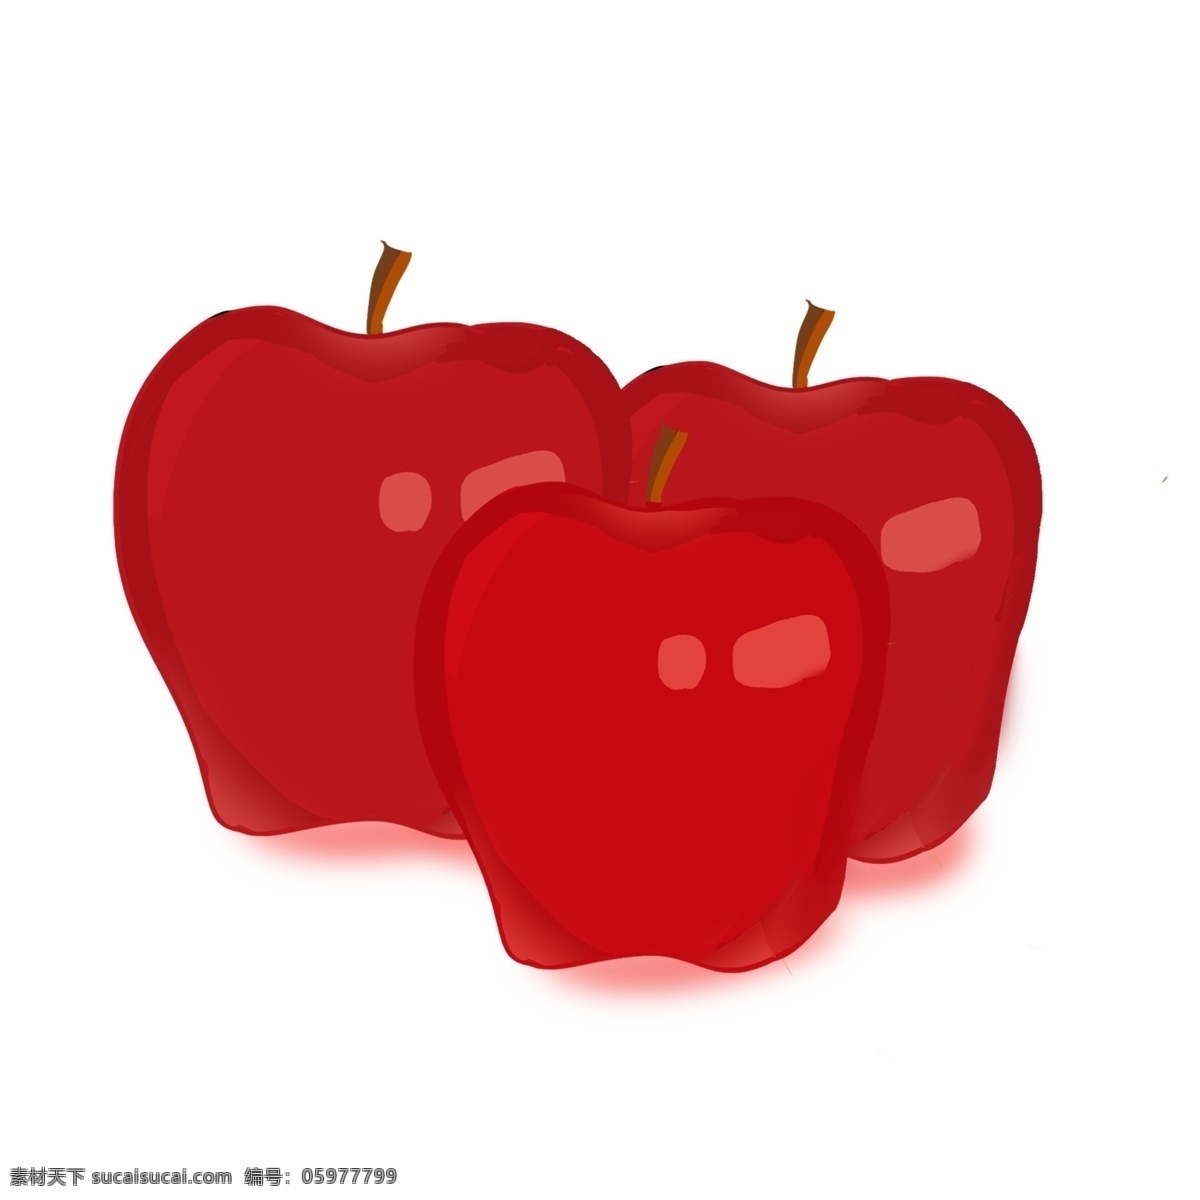 花牛 苹果 手绘 水果 中国风画法 红色 三个 平安吉祥 水果之王 装饰 贴画 中国红